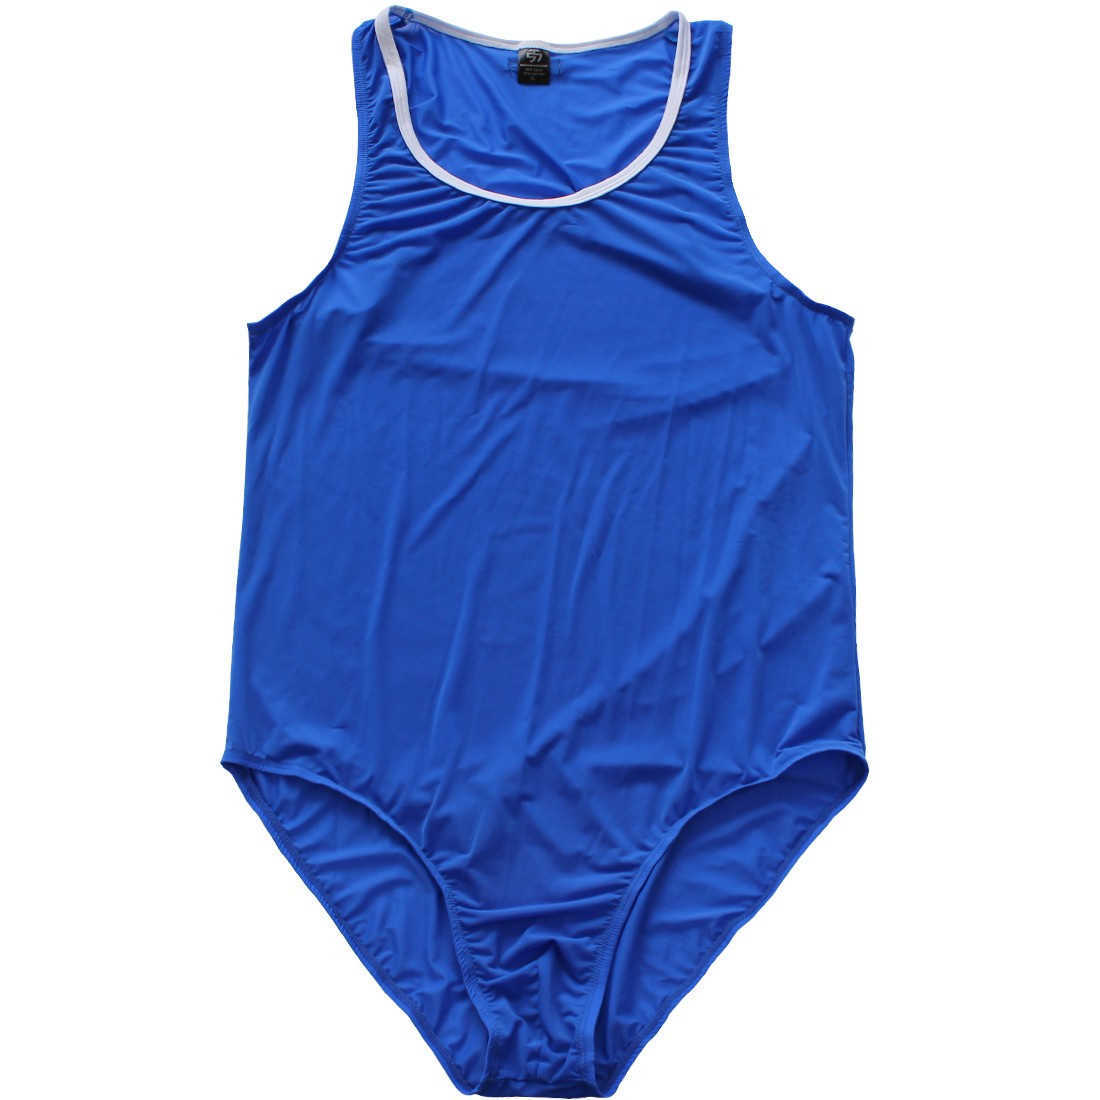 Męskie stroje kąpielowe męskie męskie męskie zapasy Singlet Swimsuit High Cut Swim Bodysuit Gymnastics Bodysuit Kąpiec Kąpiec Catsuit Swimming SuithKD230621